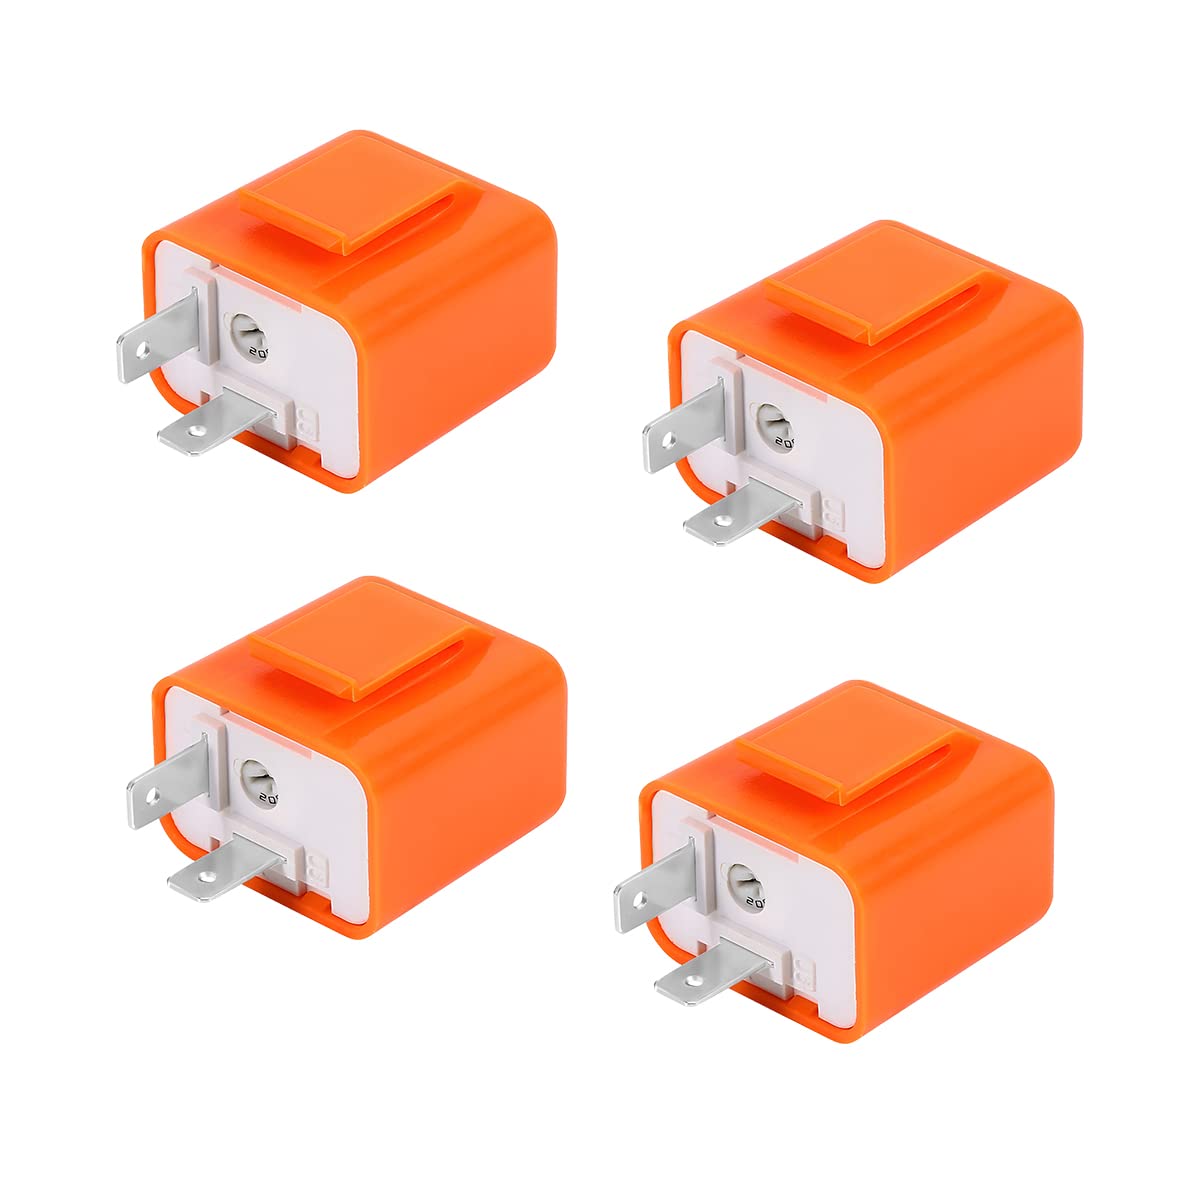 CGEAMDY 4 Stück Einstellbares Blinkrelais Kompatibel, 12 Volt Blinkgeber Blinkfrequenzkontroll Relai für Motorräder, 2 Pin Car Relais für Auto Truck Motor Relay(Orange) von CGEAMDY